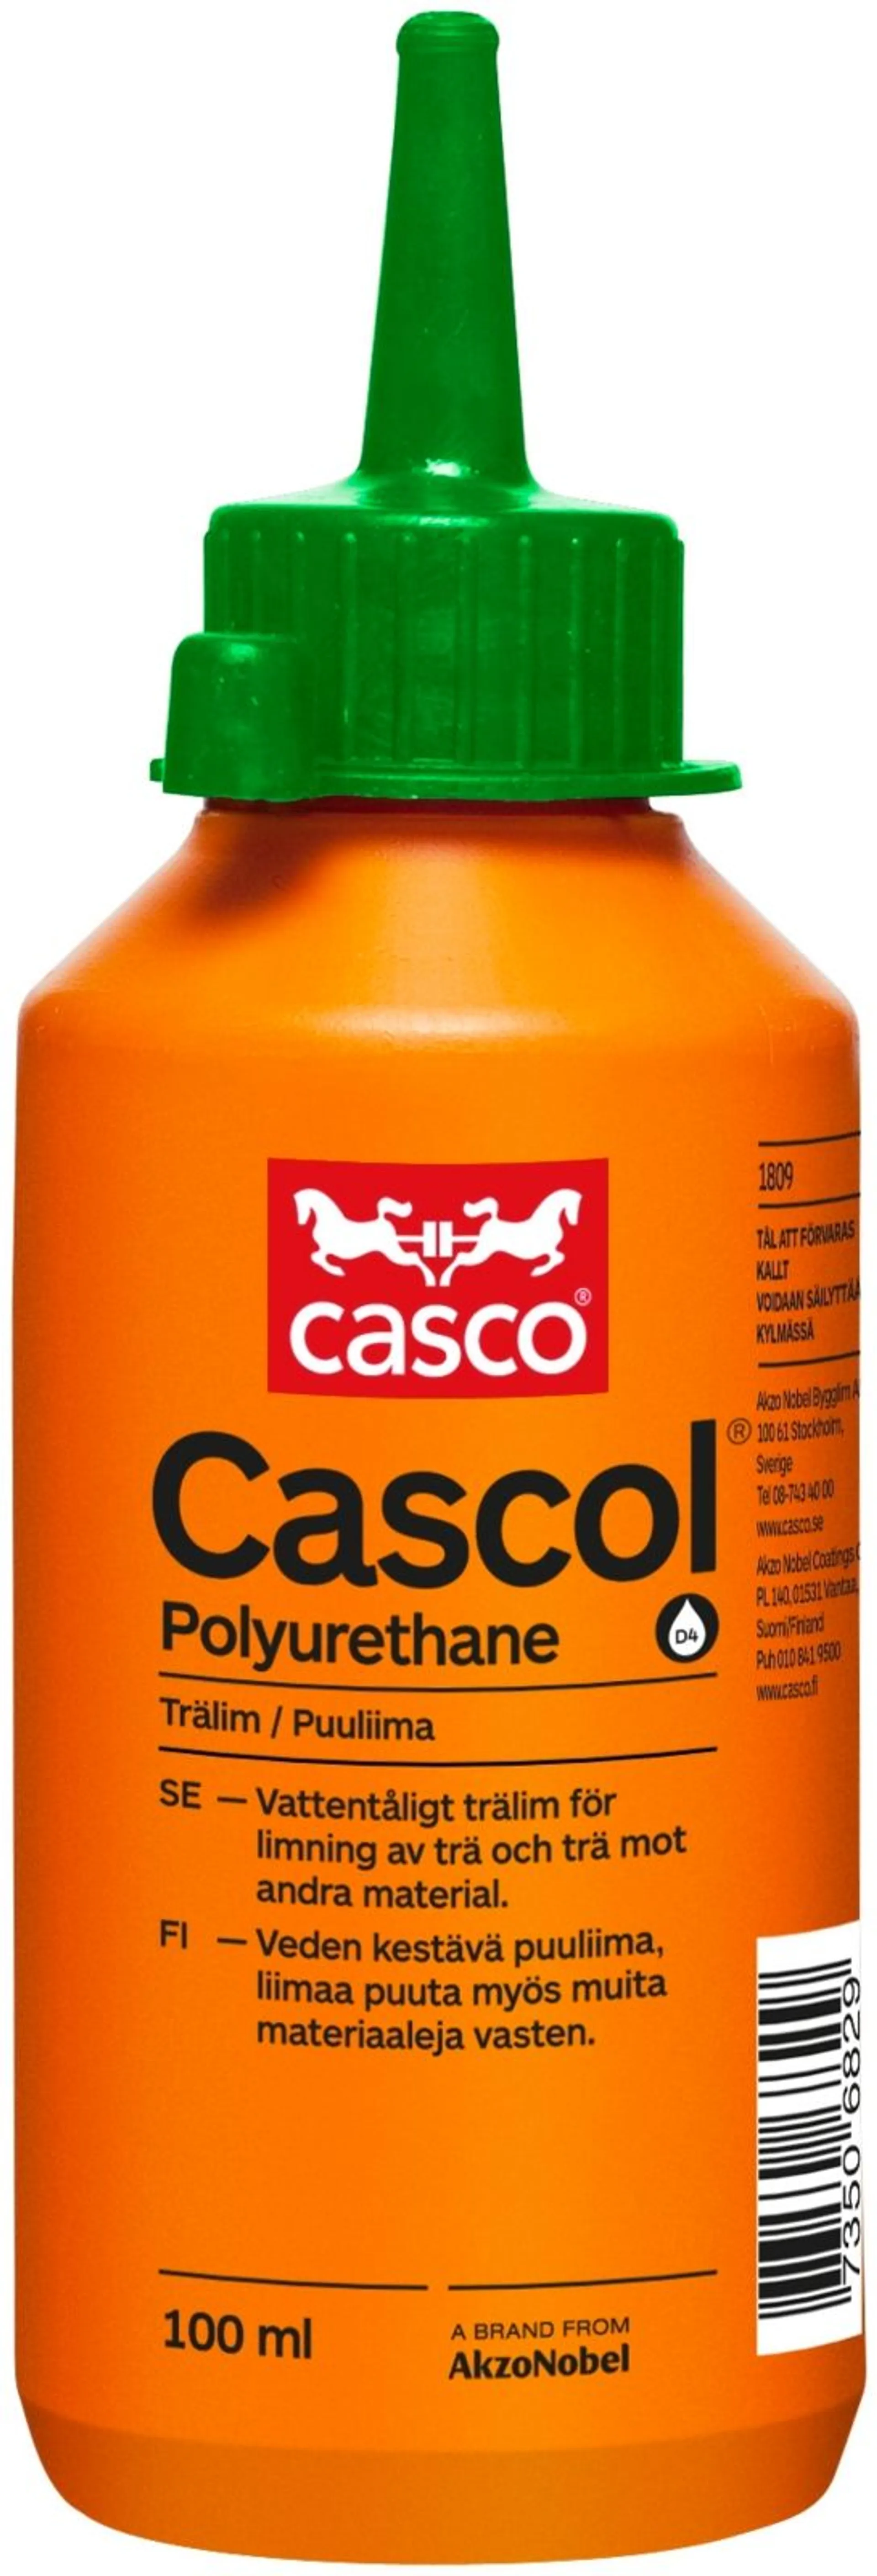 Casco polyuretaaniliima Cascol 100 ml